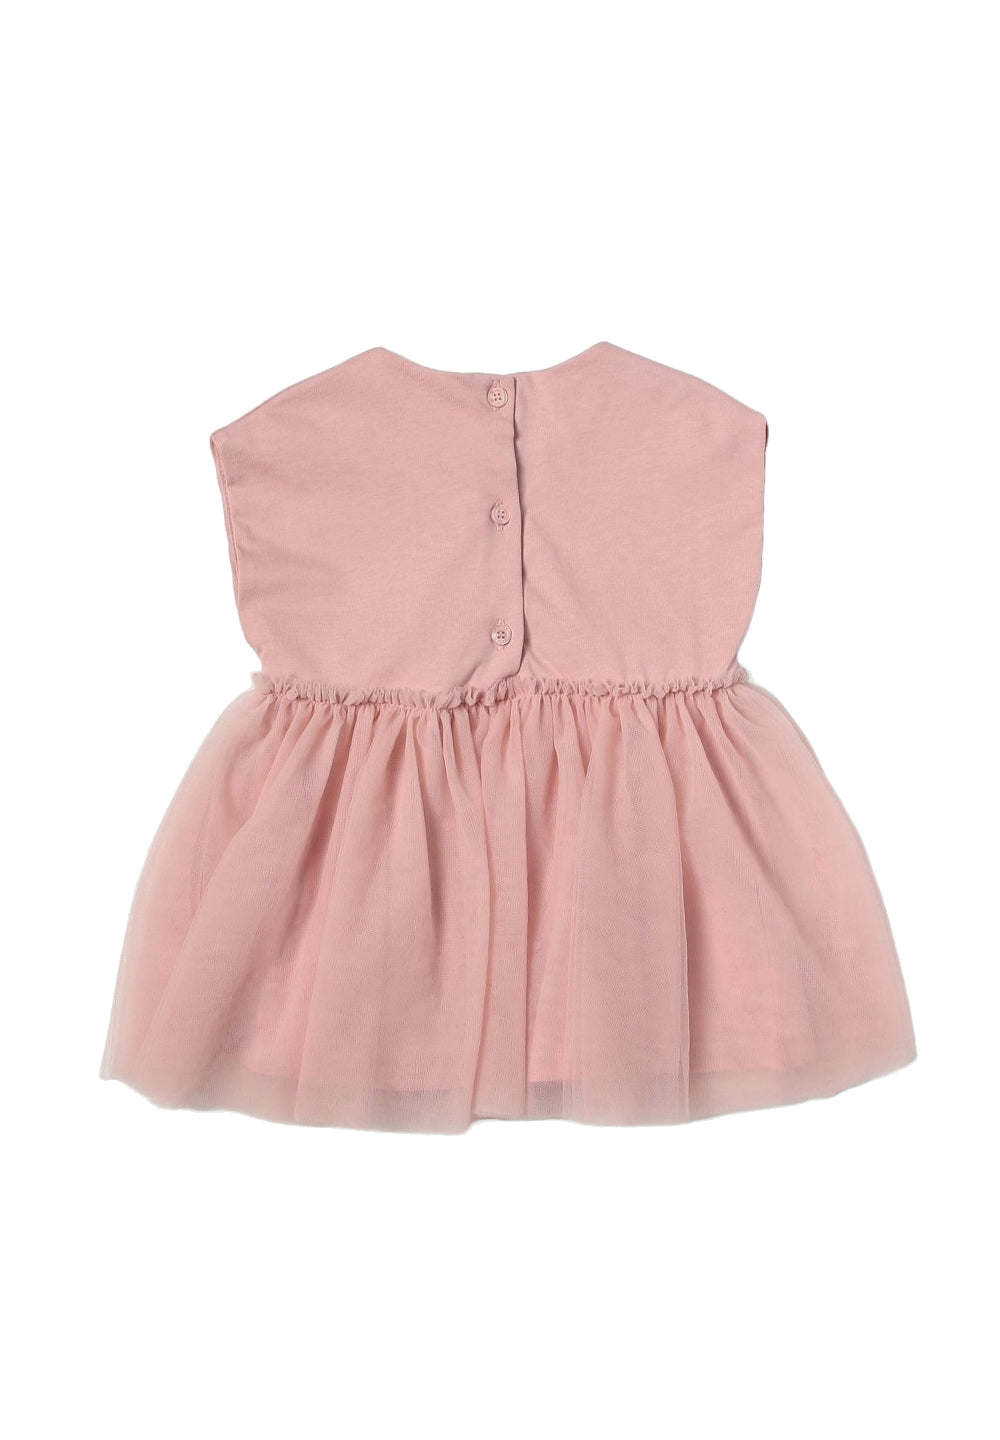 Vestito rosa per neonata - Primamoda kids